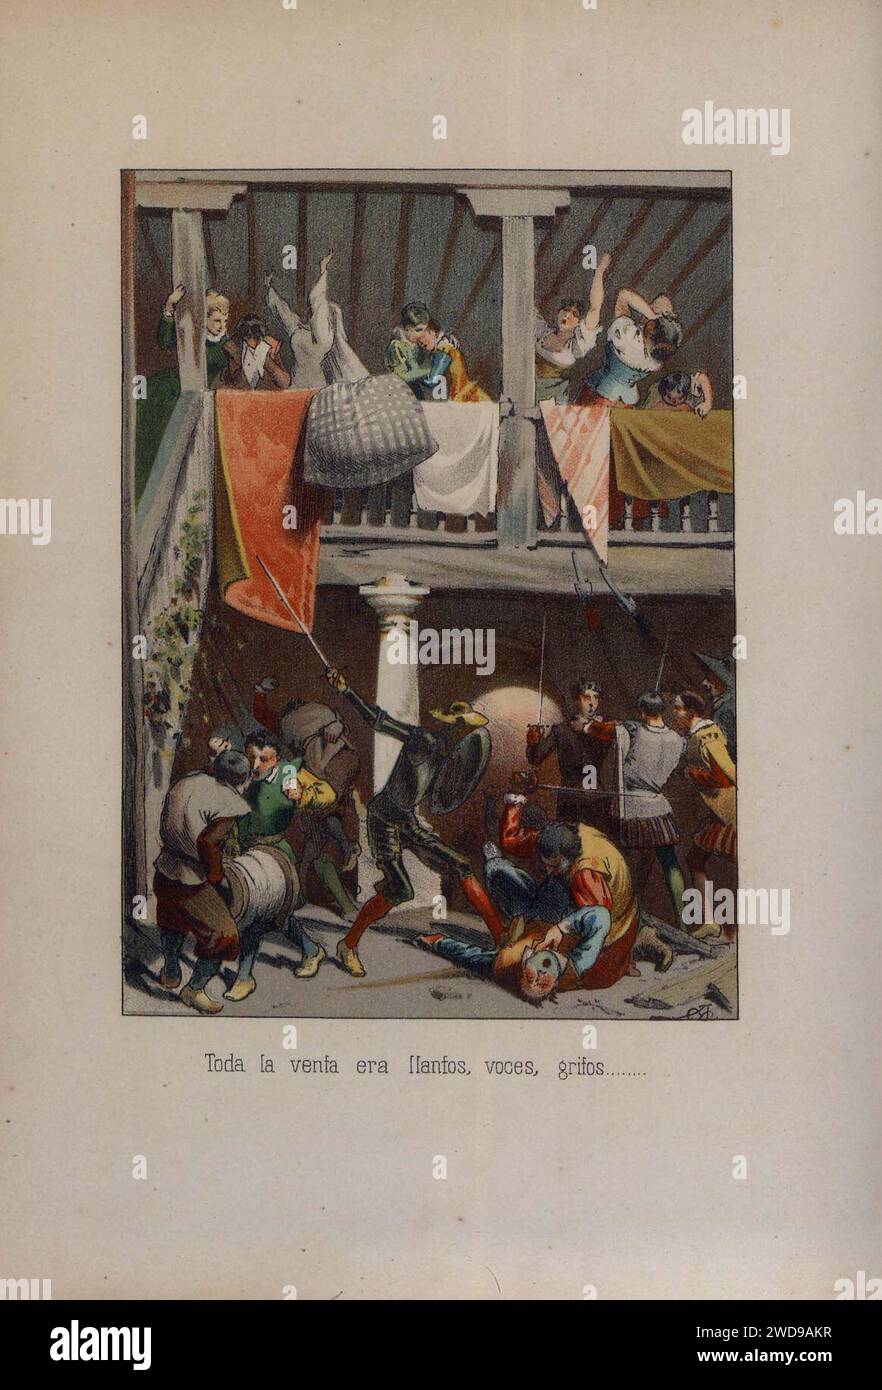 1879, El ingenioso hidalgo D. Quijote de la Mancha, Toda la venta eran llantos, voces, gritos, Mestres. Stock Photo